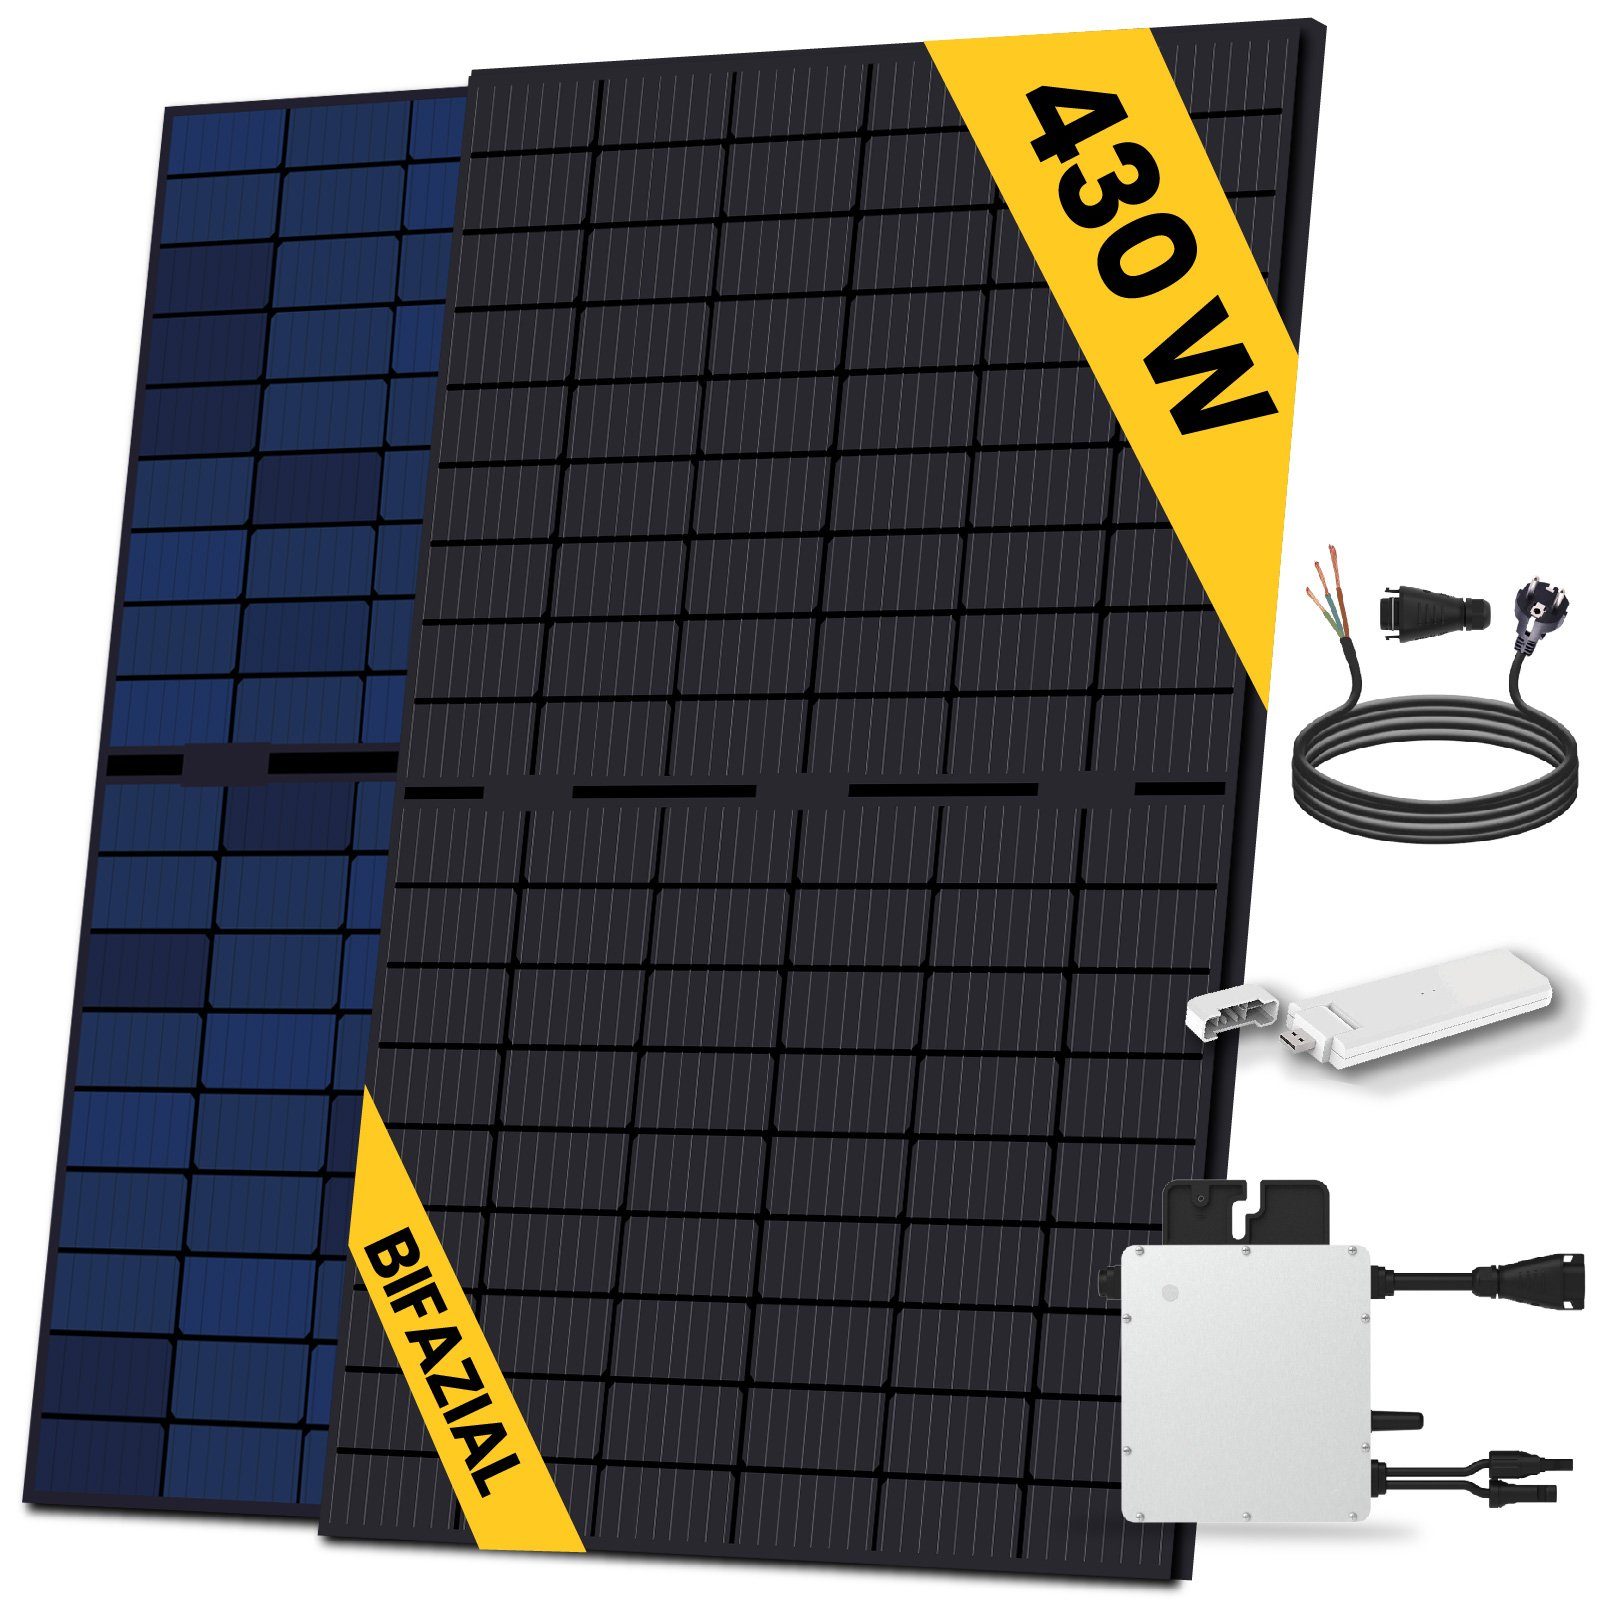 SOLAR-HOOK Bifazial Solaranlage mit 430W HMS-400-1T Wechselrichter etm Balkonkraftwerk